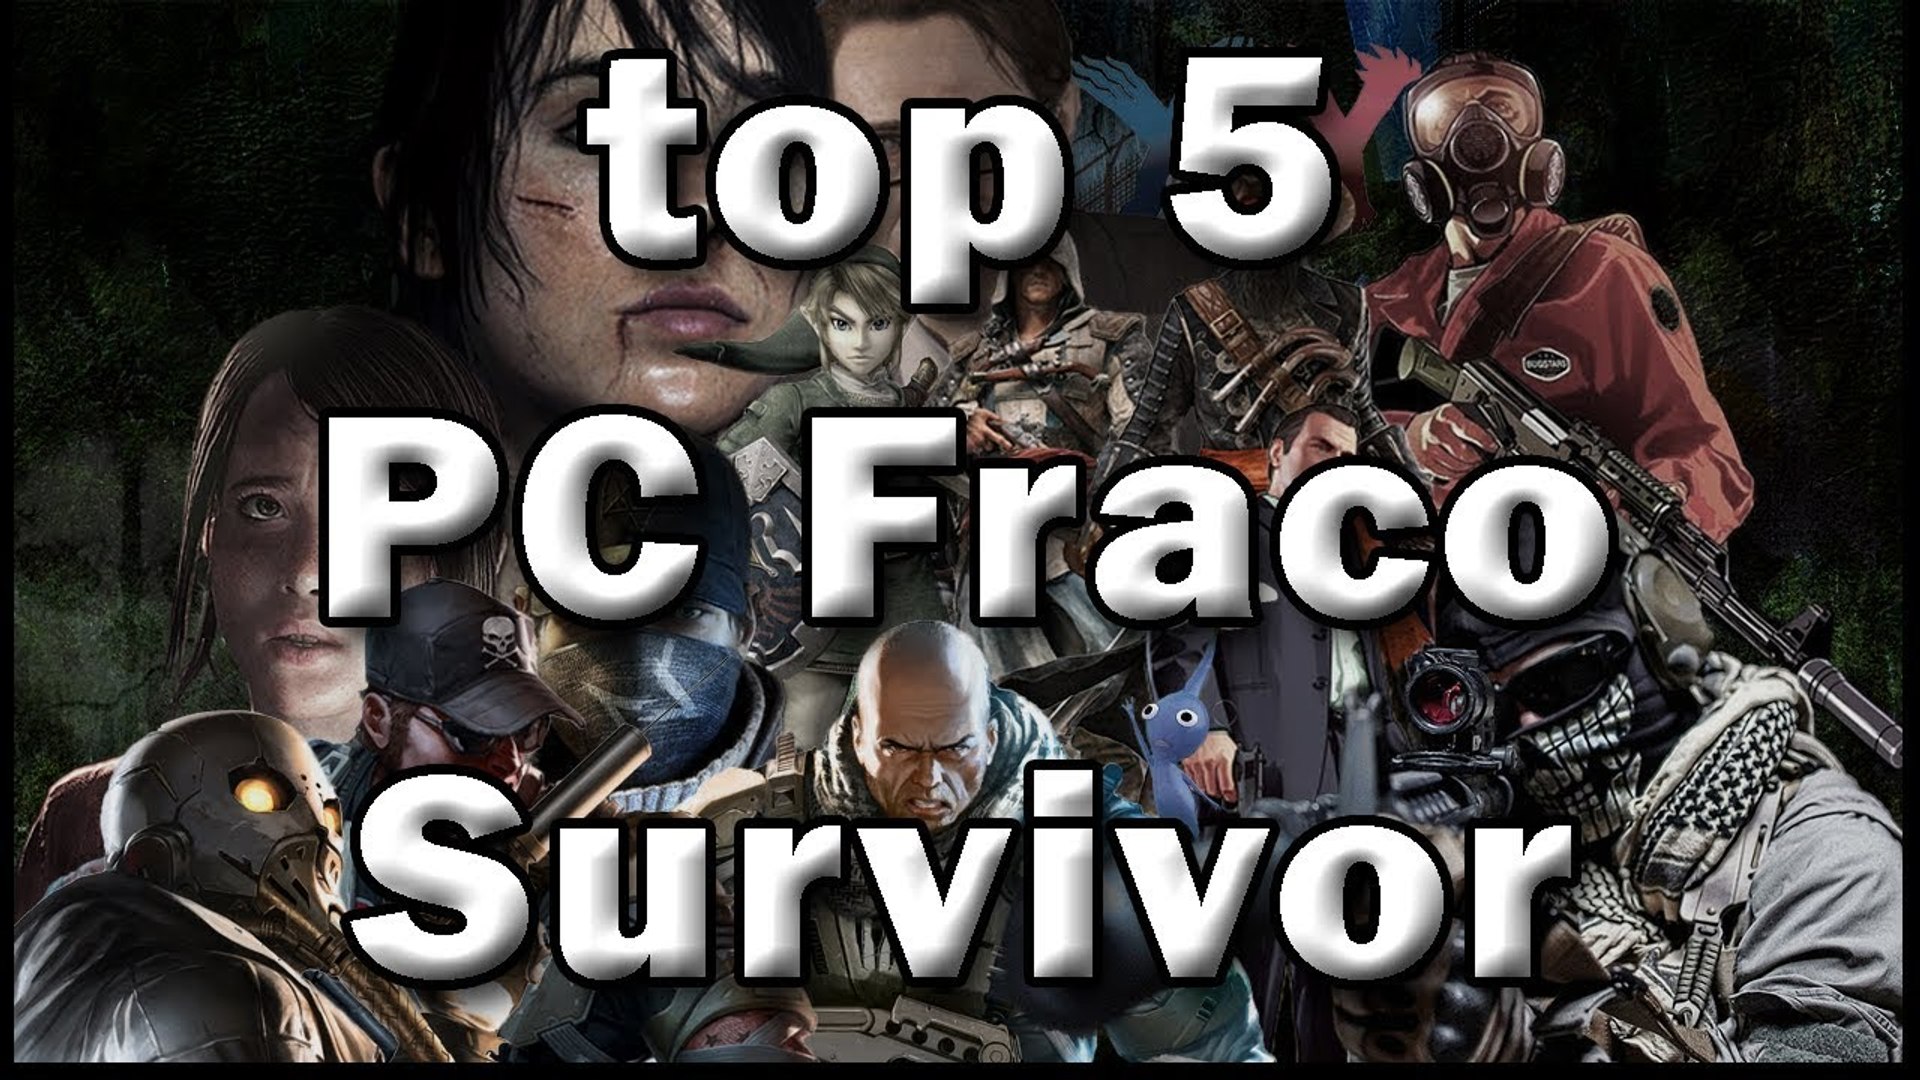 Top 5 Jogos Sobrevivencia para PC Fraco 2018 - Vídeo Dailymotion